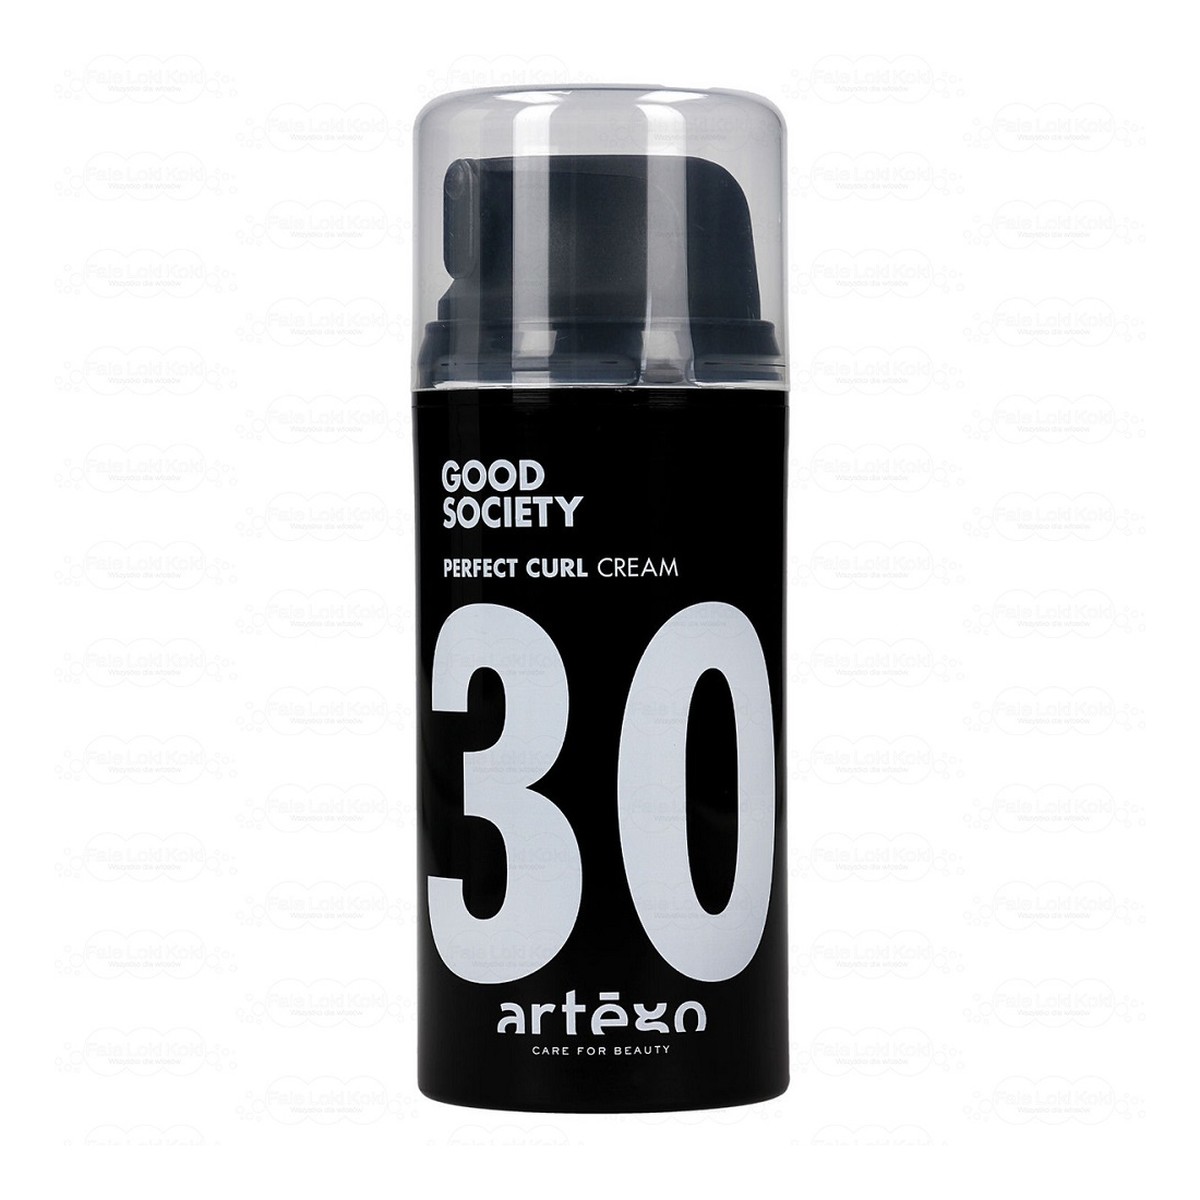 Artego Good Society Perfect Curl 30 Cream krem modelujący do włosów kręconych 100ml